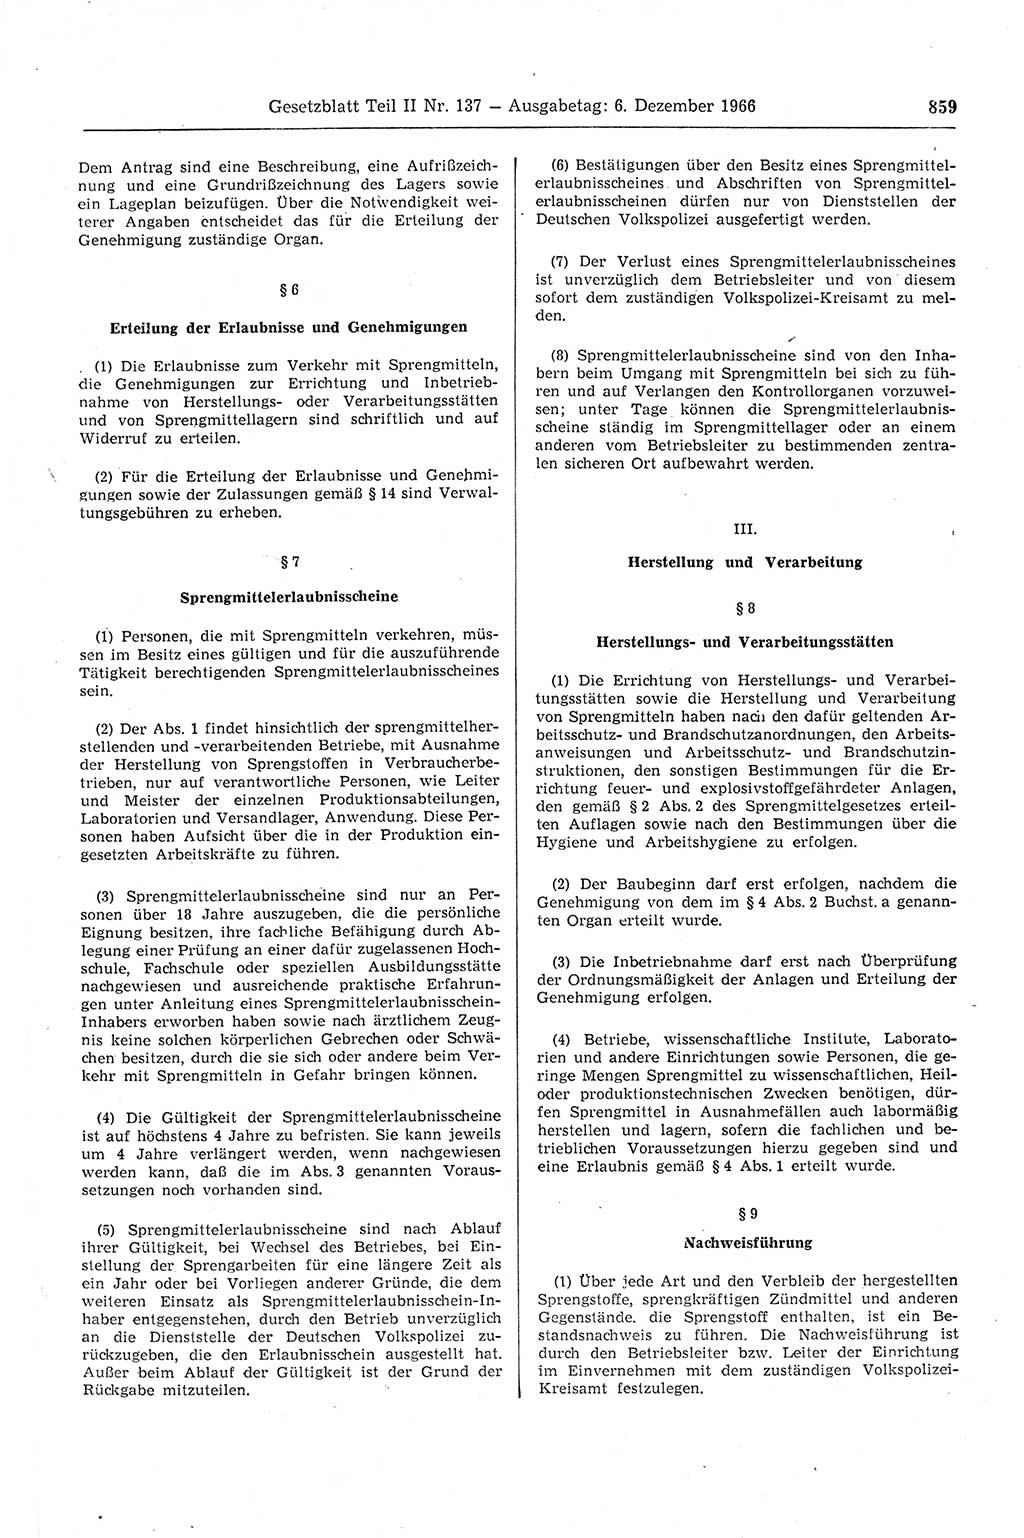 Gesetzblatt (GBl.) der Deutschen Demokratischen Republik (DDR) Teil ⅠⅠ 1966, Seite 859 (GBl. DDR ⅠⅠ 1966, S. 859)